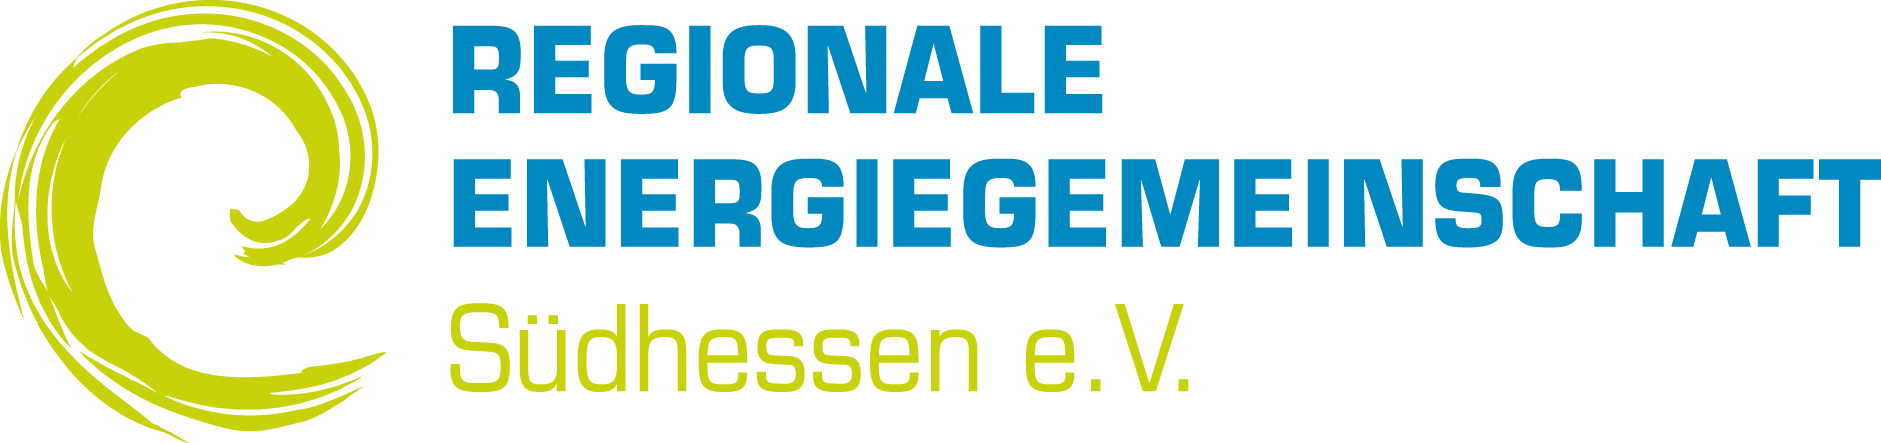 Regionale Energiegemeinschaft Südhessen e.V.